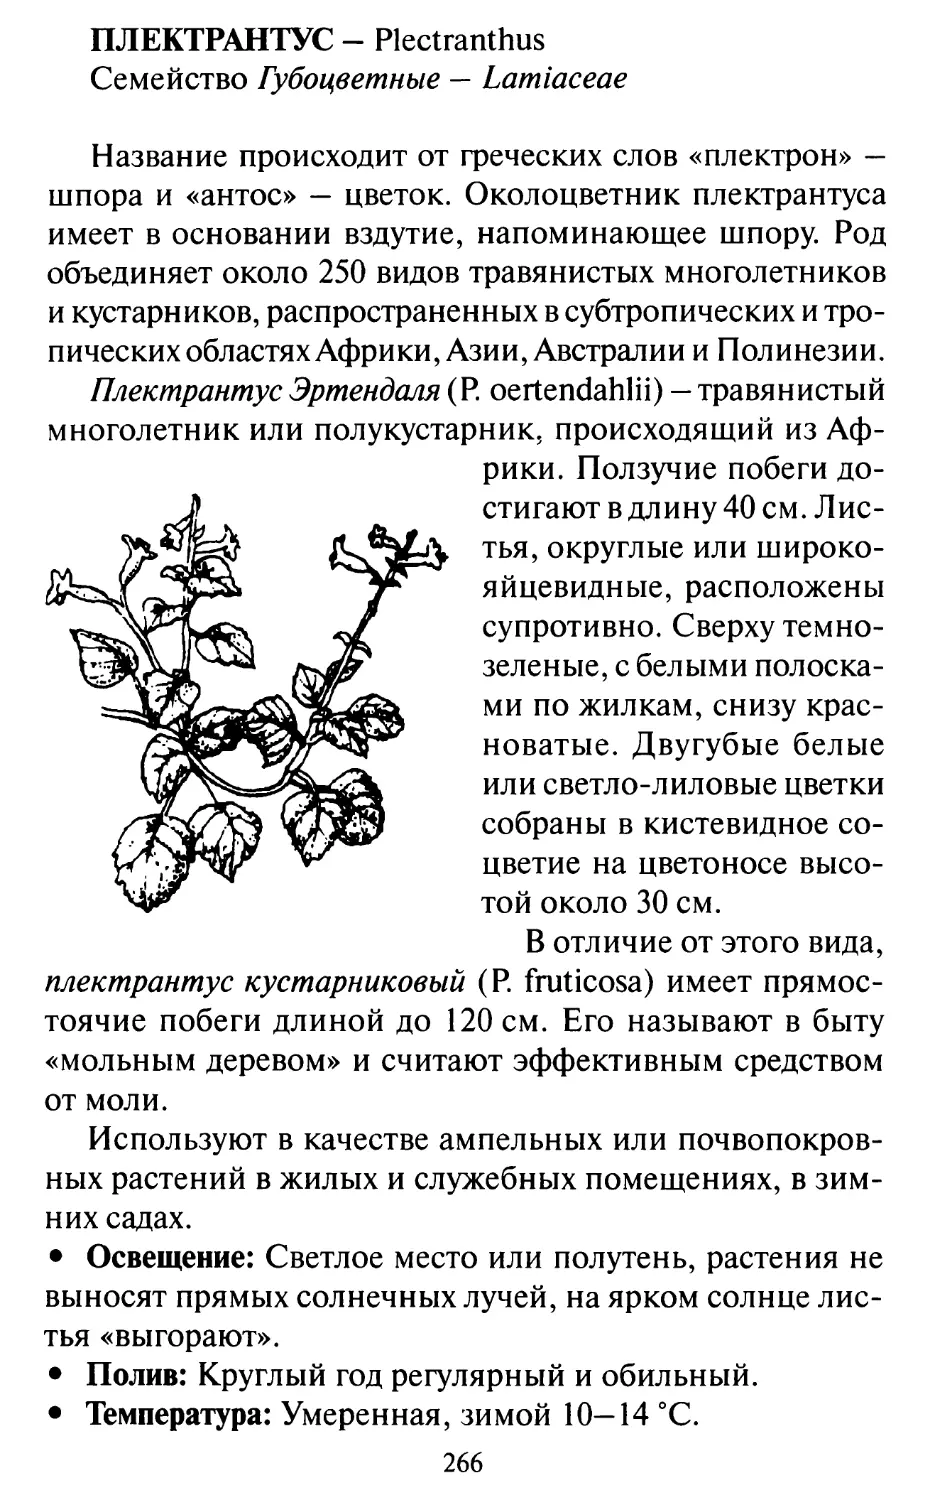 Плектрантус — Plectranthus